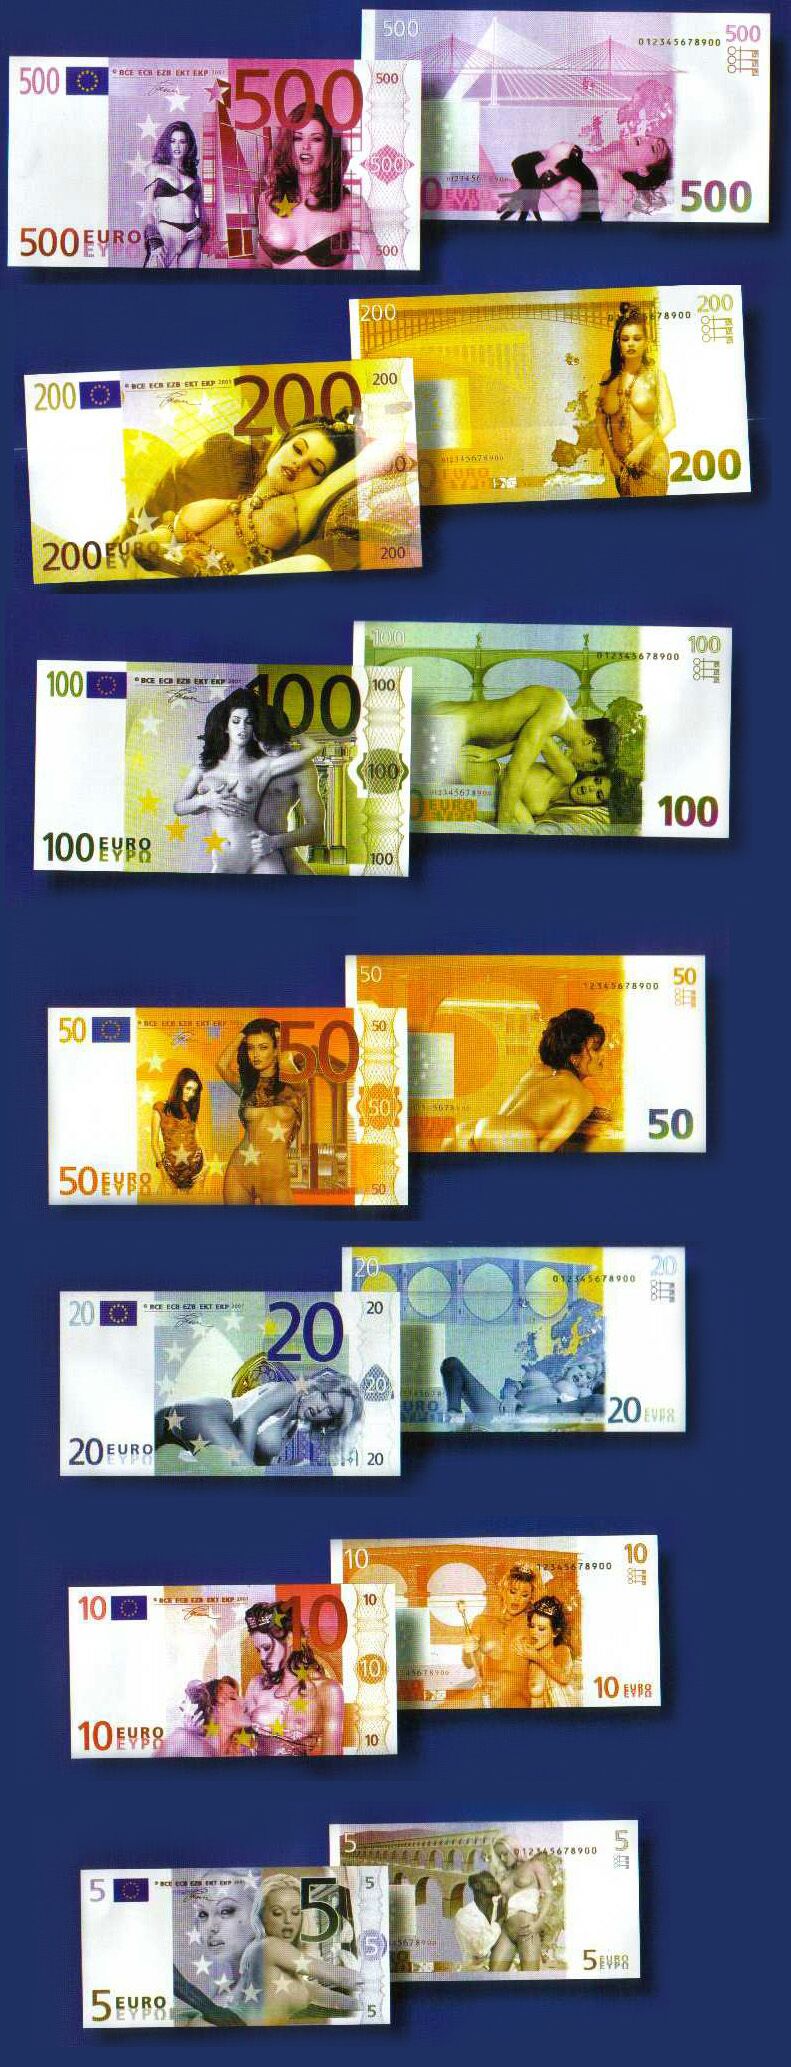 New Euros